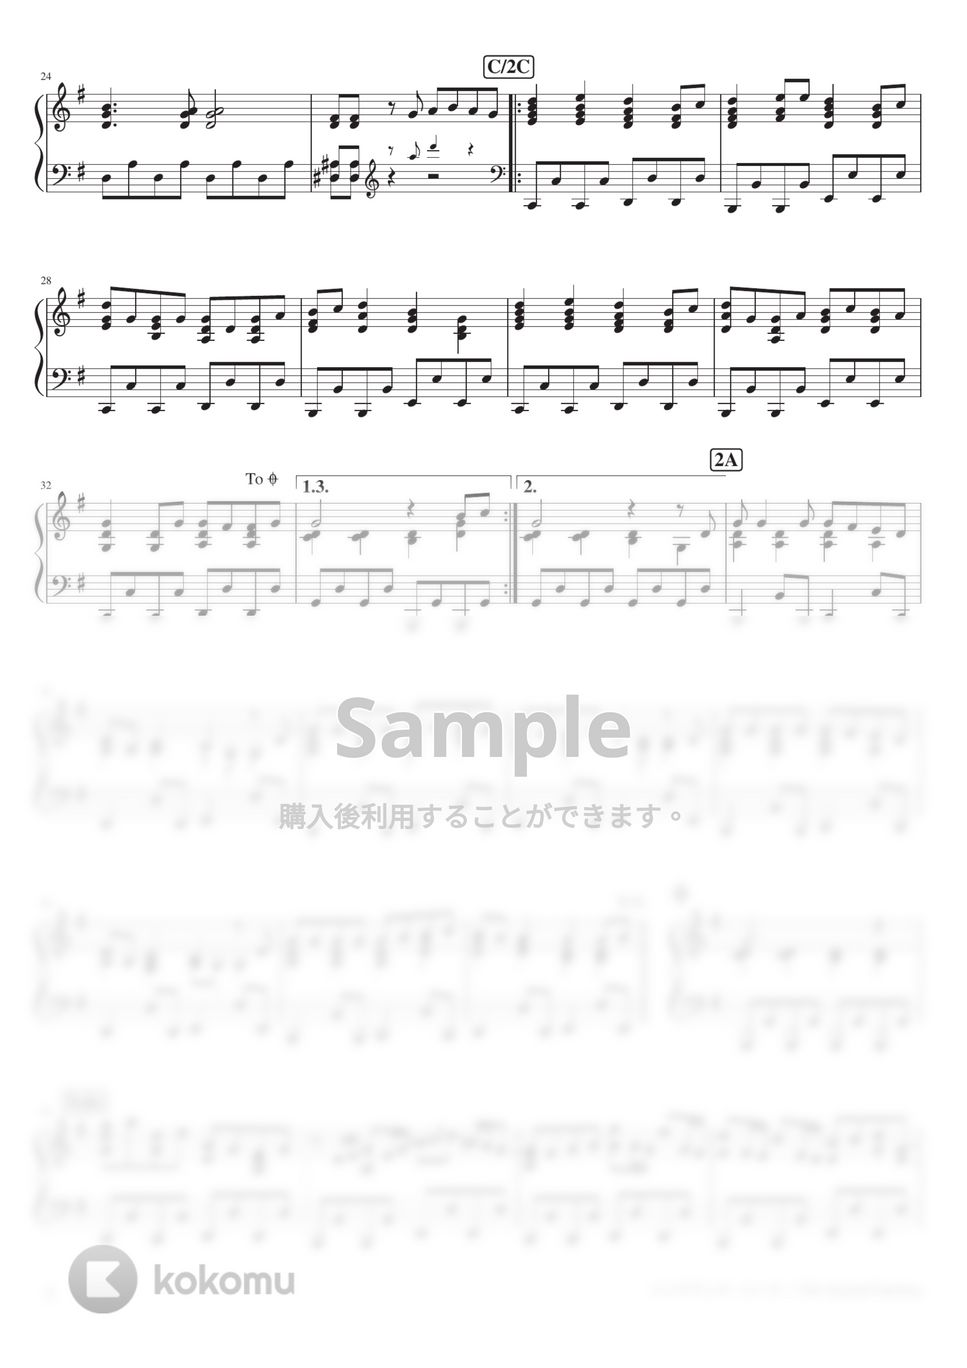 19's Sound Factory - ハイドアンド・シーク (PianoSolo) by 深根 / Fukane